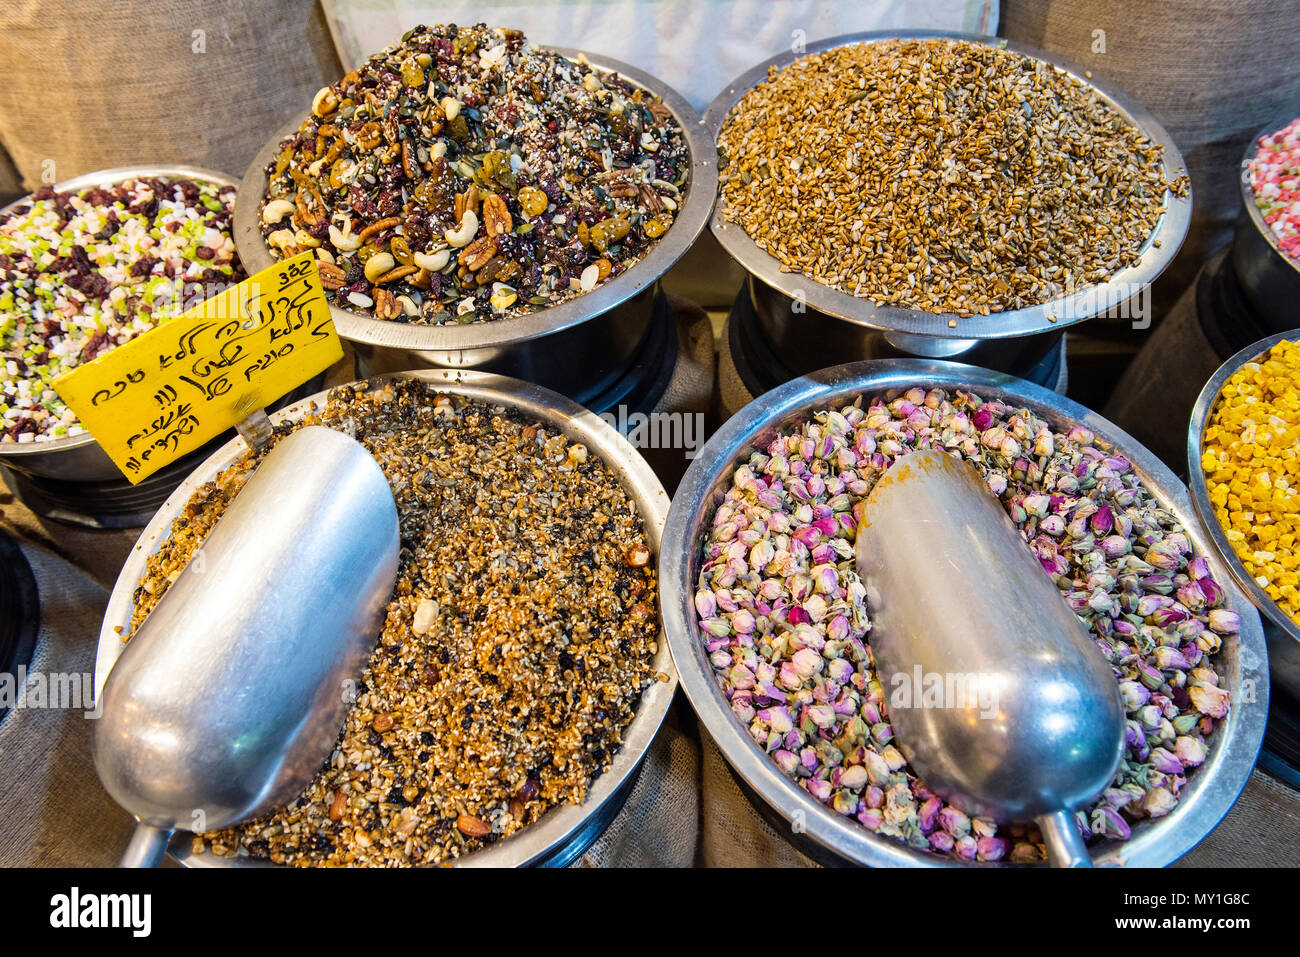 Arabischen Markt in Jerusalem mit verschiedenen Waren, getrocknete Früchte, Ölsaaten, Rosen, Kaffee Stockfoto